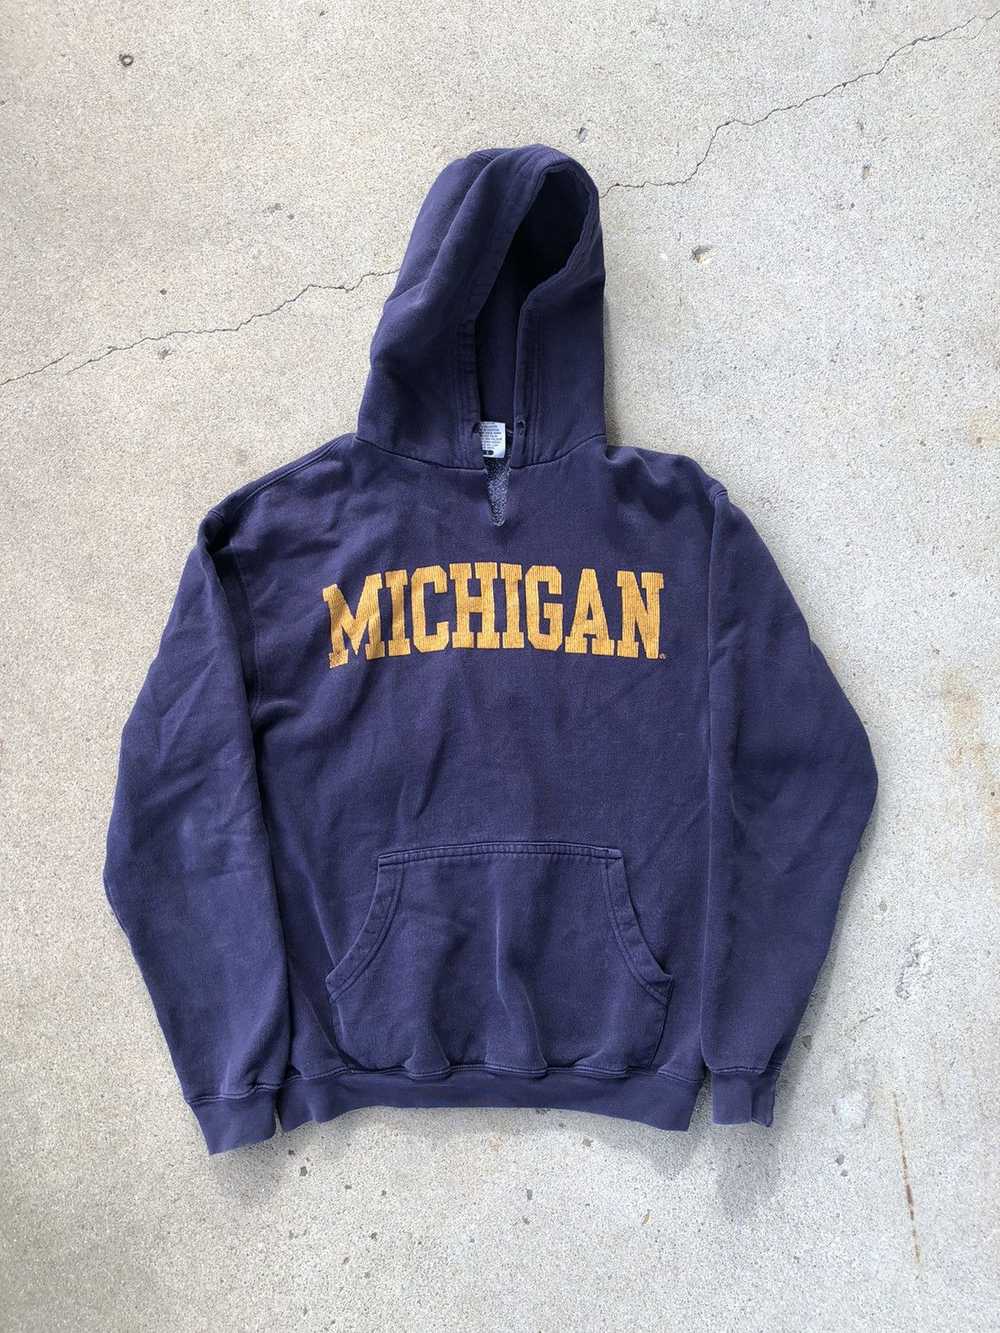 American College × Vintage Vintage Michigan Hoodie - image 1